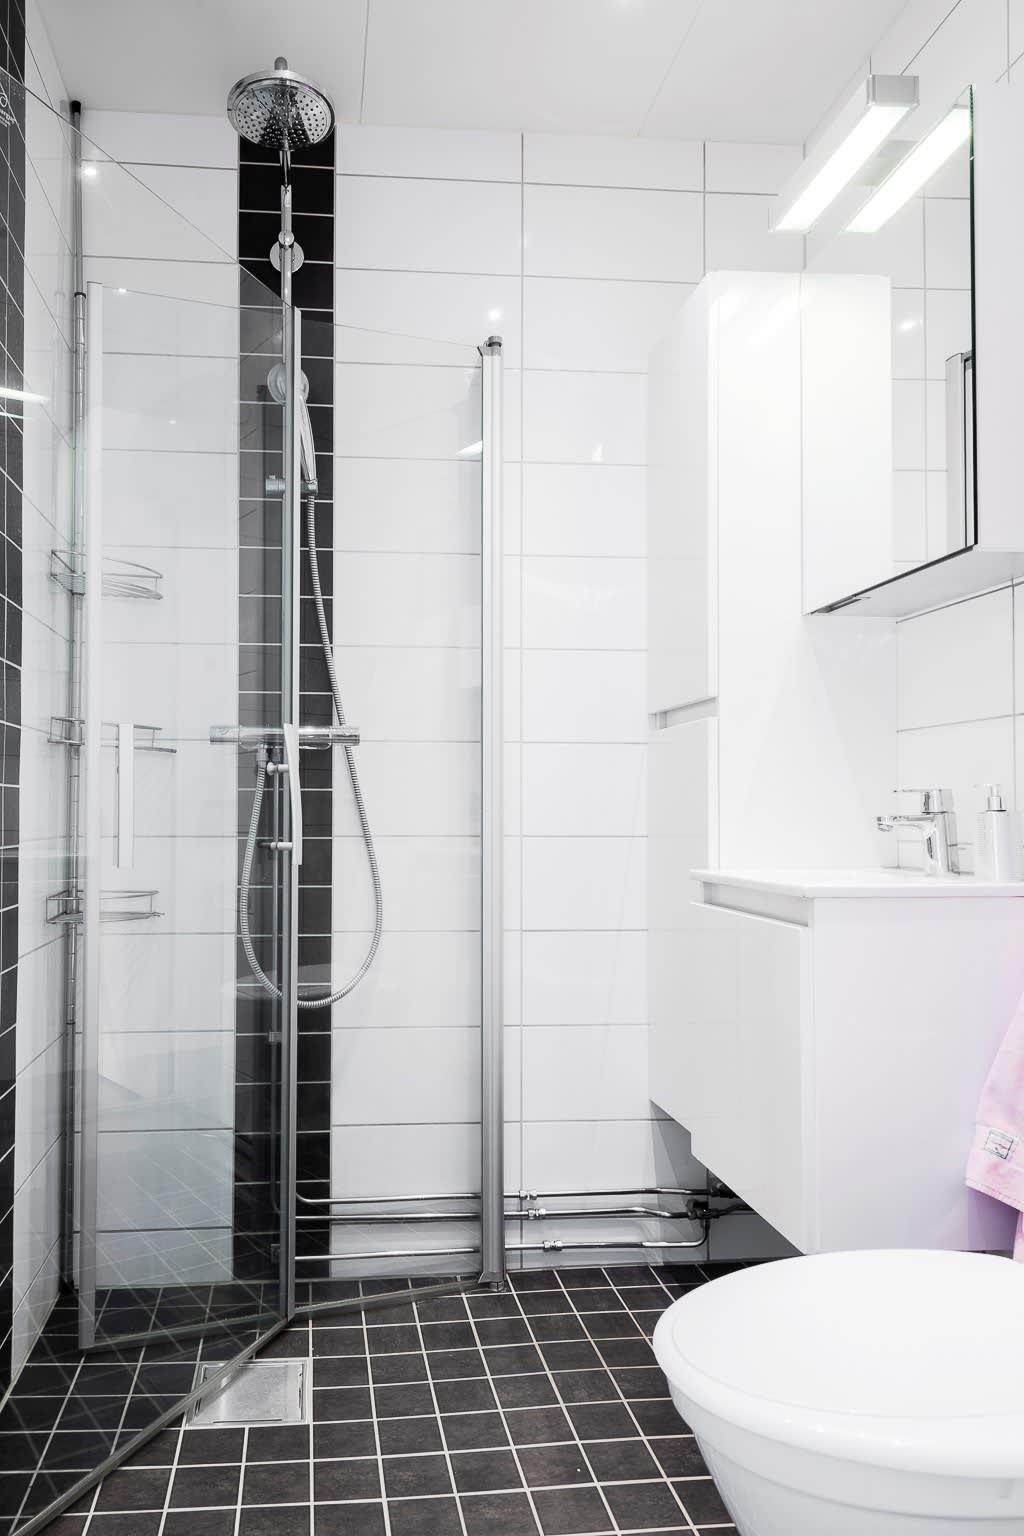 Välutrustat badrum med bekvämligeheter som takdusch, spotlightbelysning, golvvärme och handdukstork